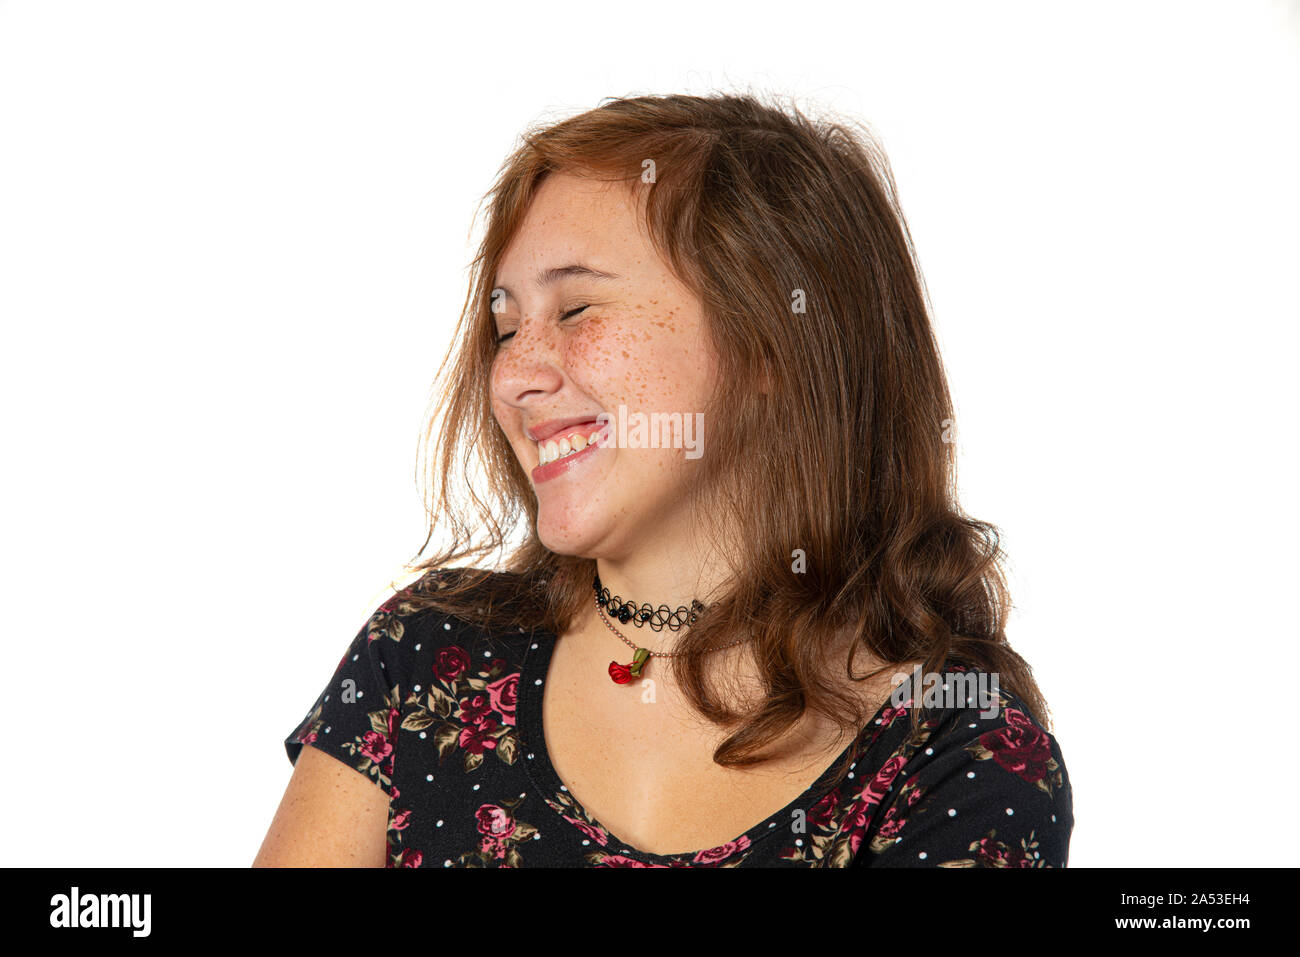 Horizontale studio Schuß eines Pre-Teen Girl mit Sommersprossen oben zu knacken Lachen. Seitliche Sicht auf ihr Gesicht. Auf weiß isoliert. Stockfoto